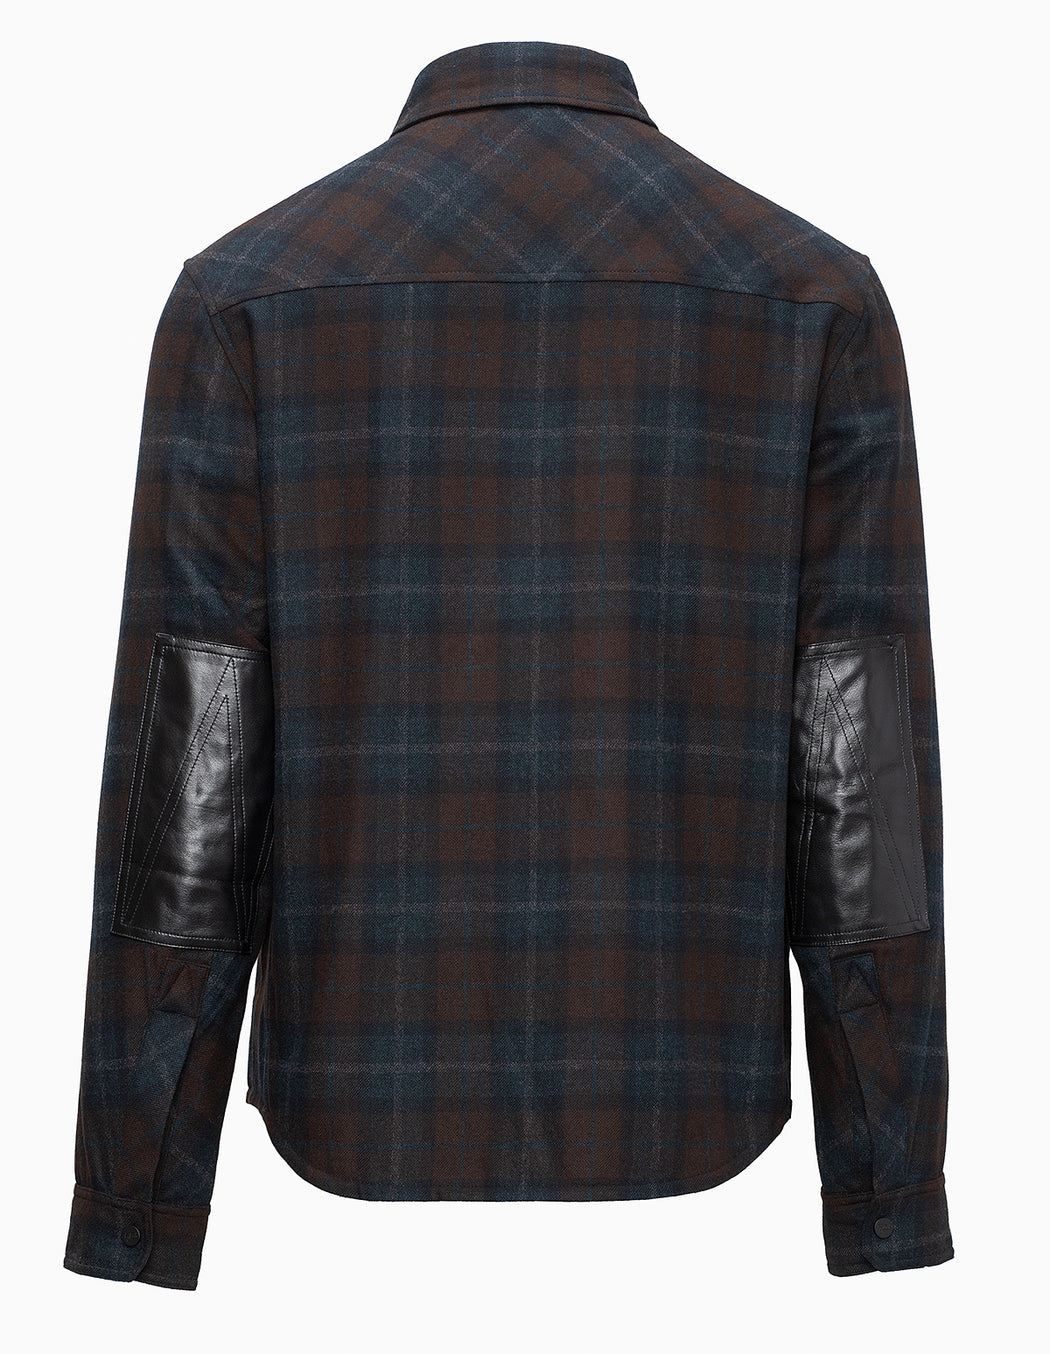 Lenado Cashmere Shirt Jacket